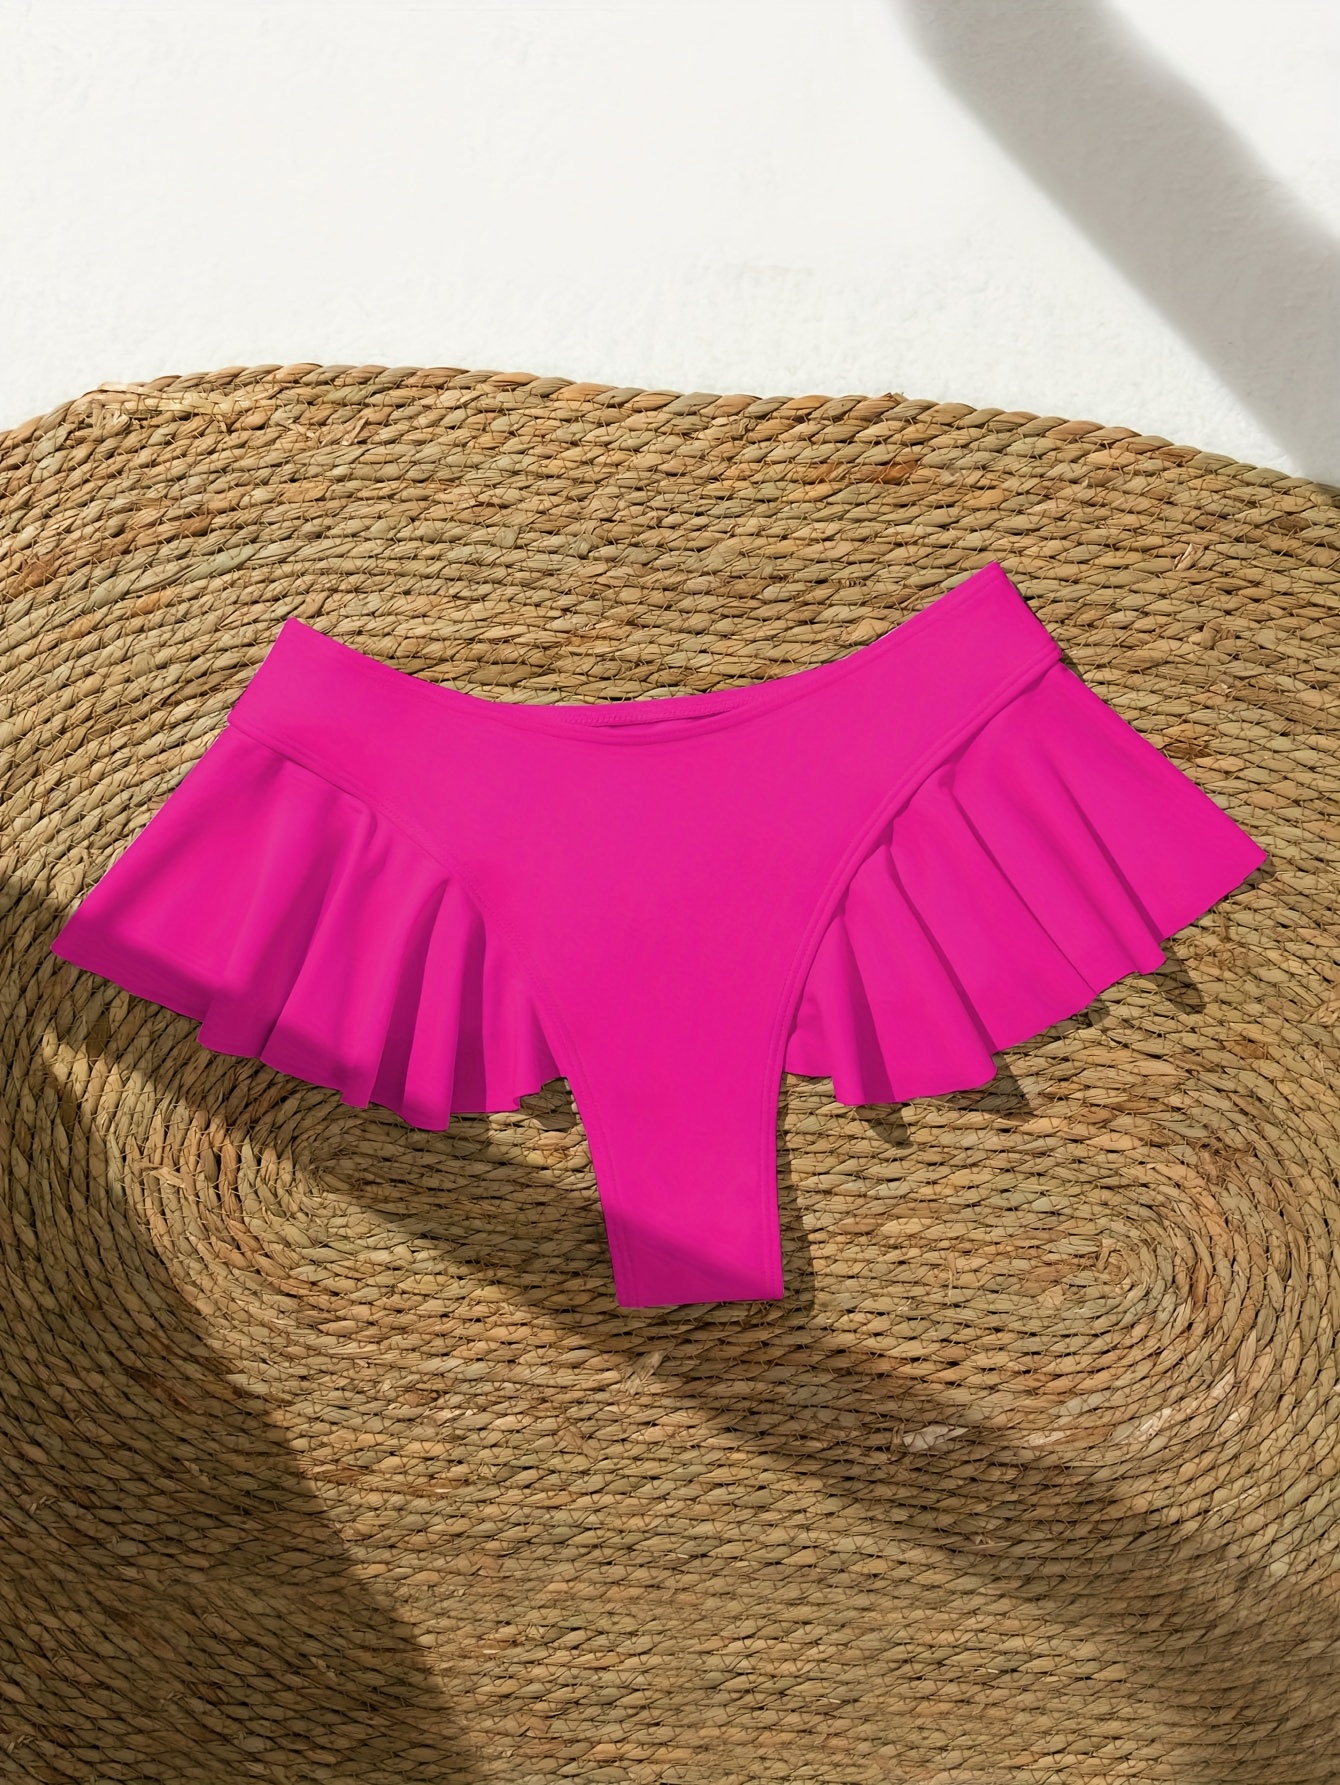 Ruffle Plain Thong Swim Briefs High Stretch Cute Bikini - Temu